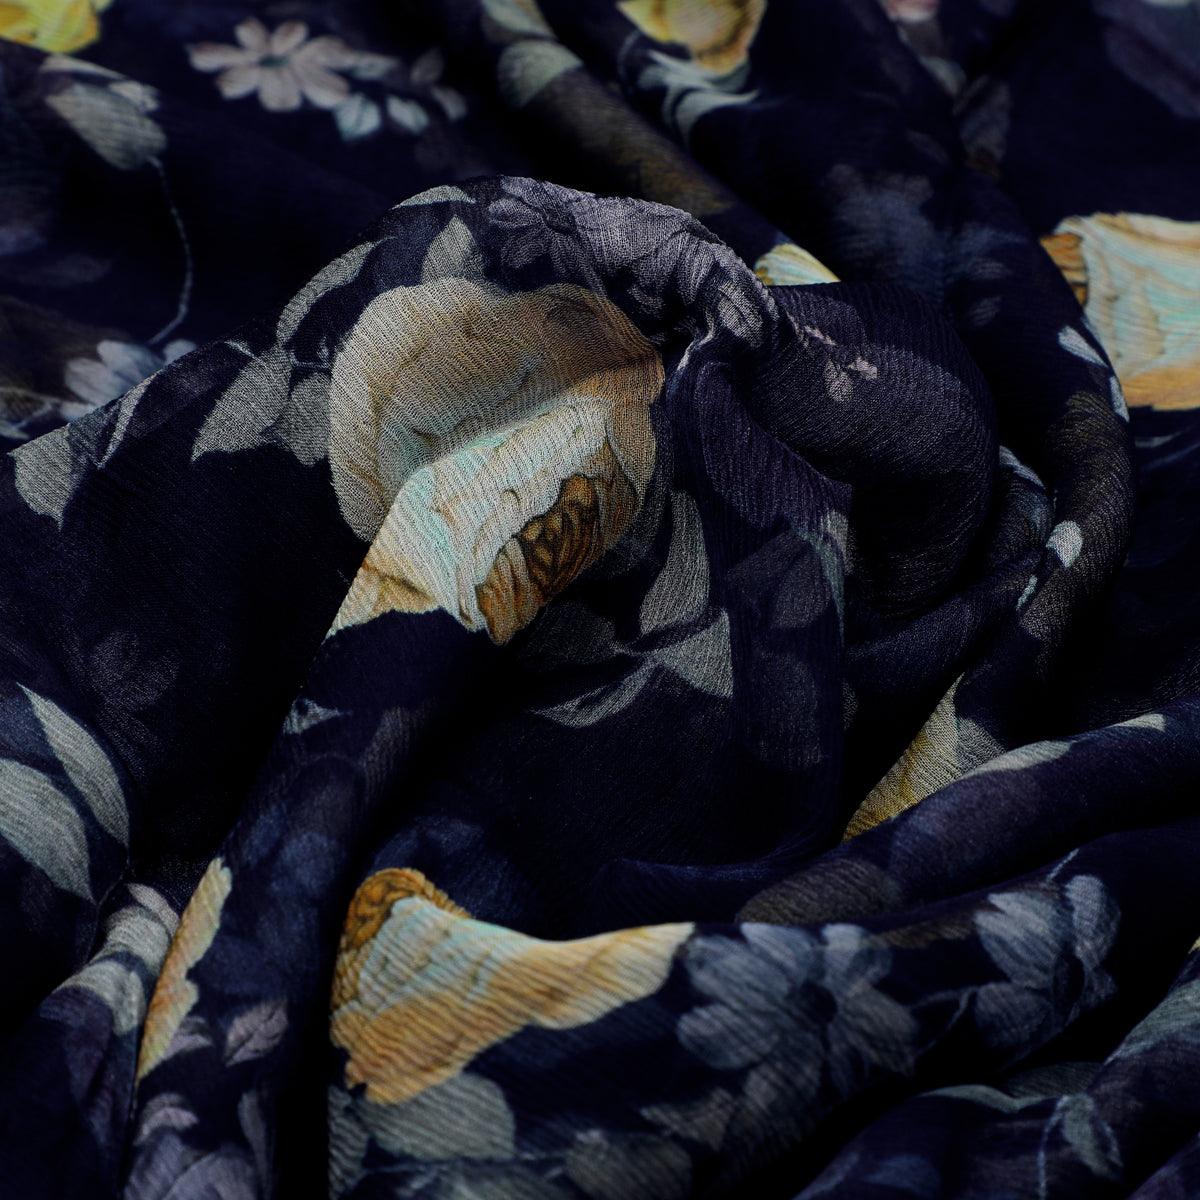 Elegant Floral Over Blue Base Digital Printed Fabric - FAB VOGUE Studio®